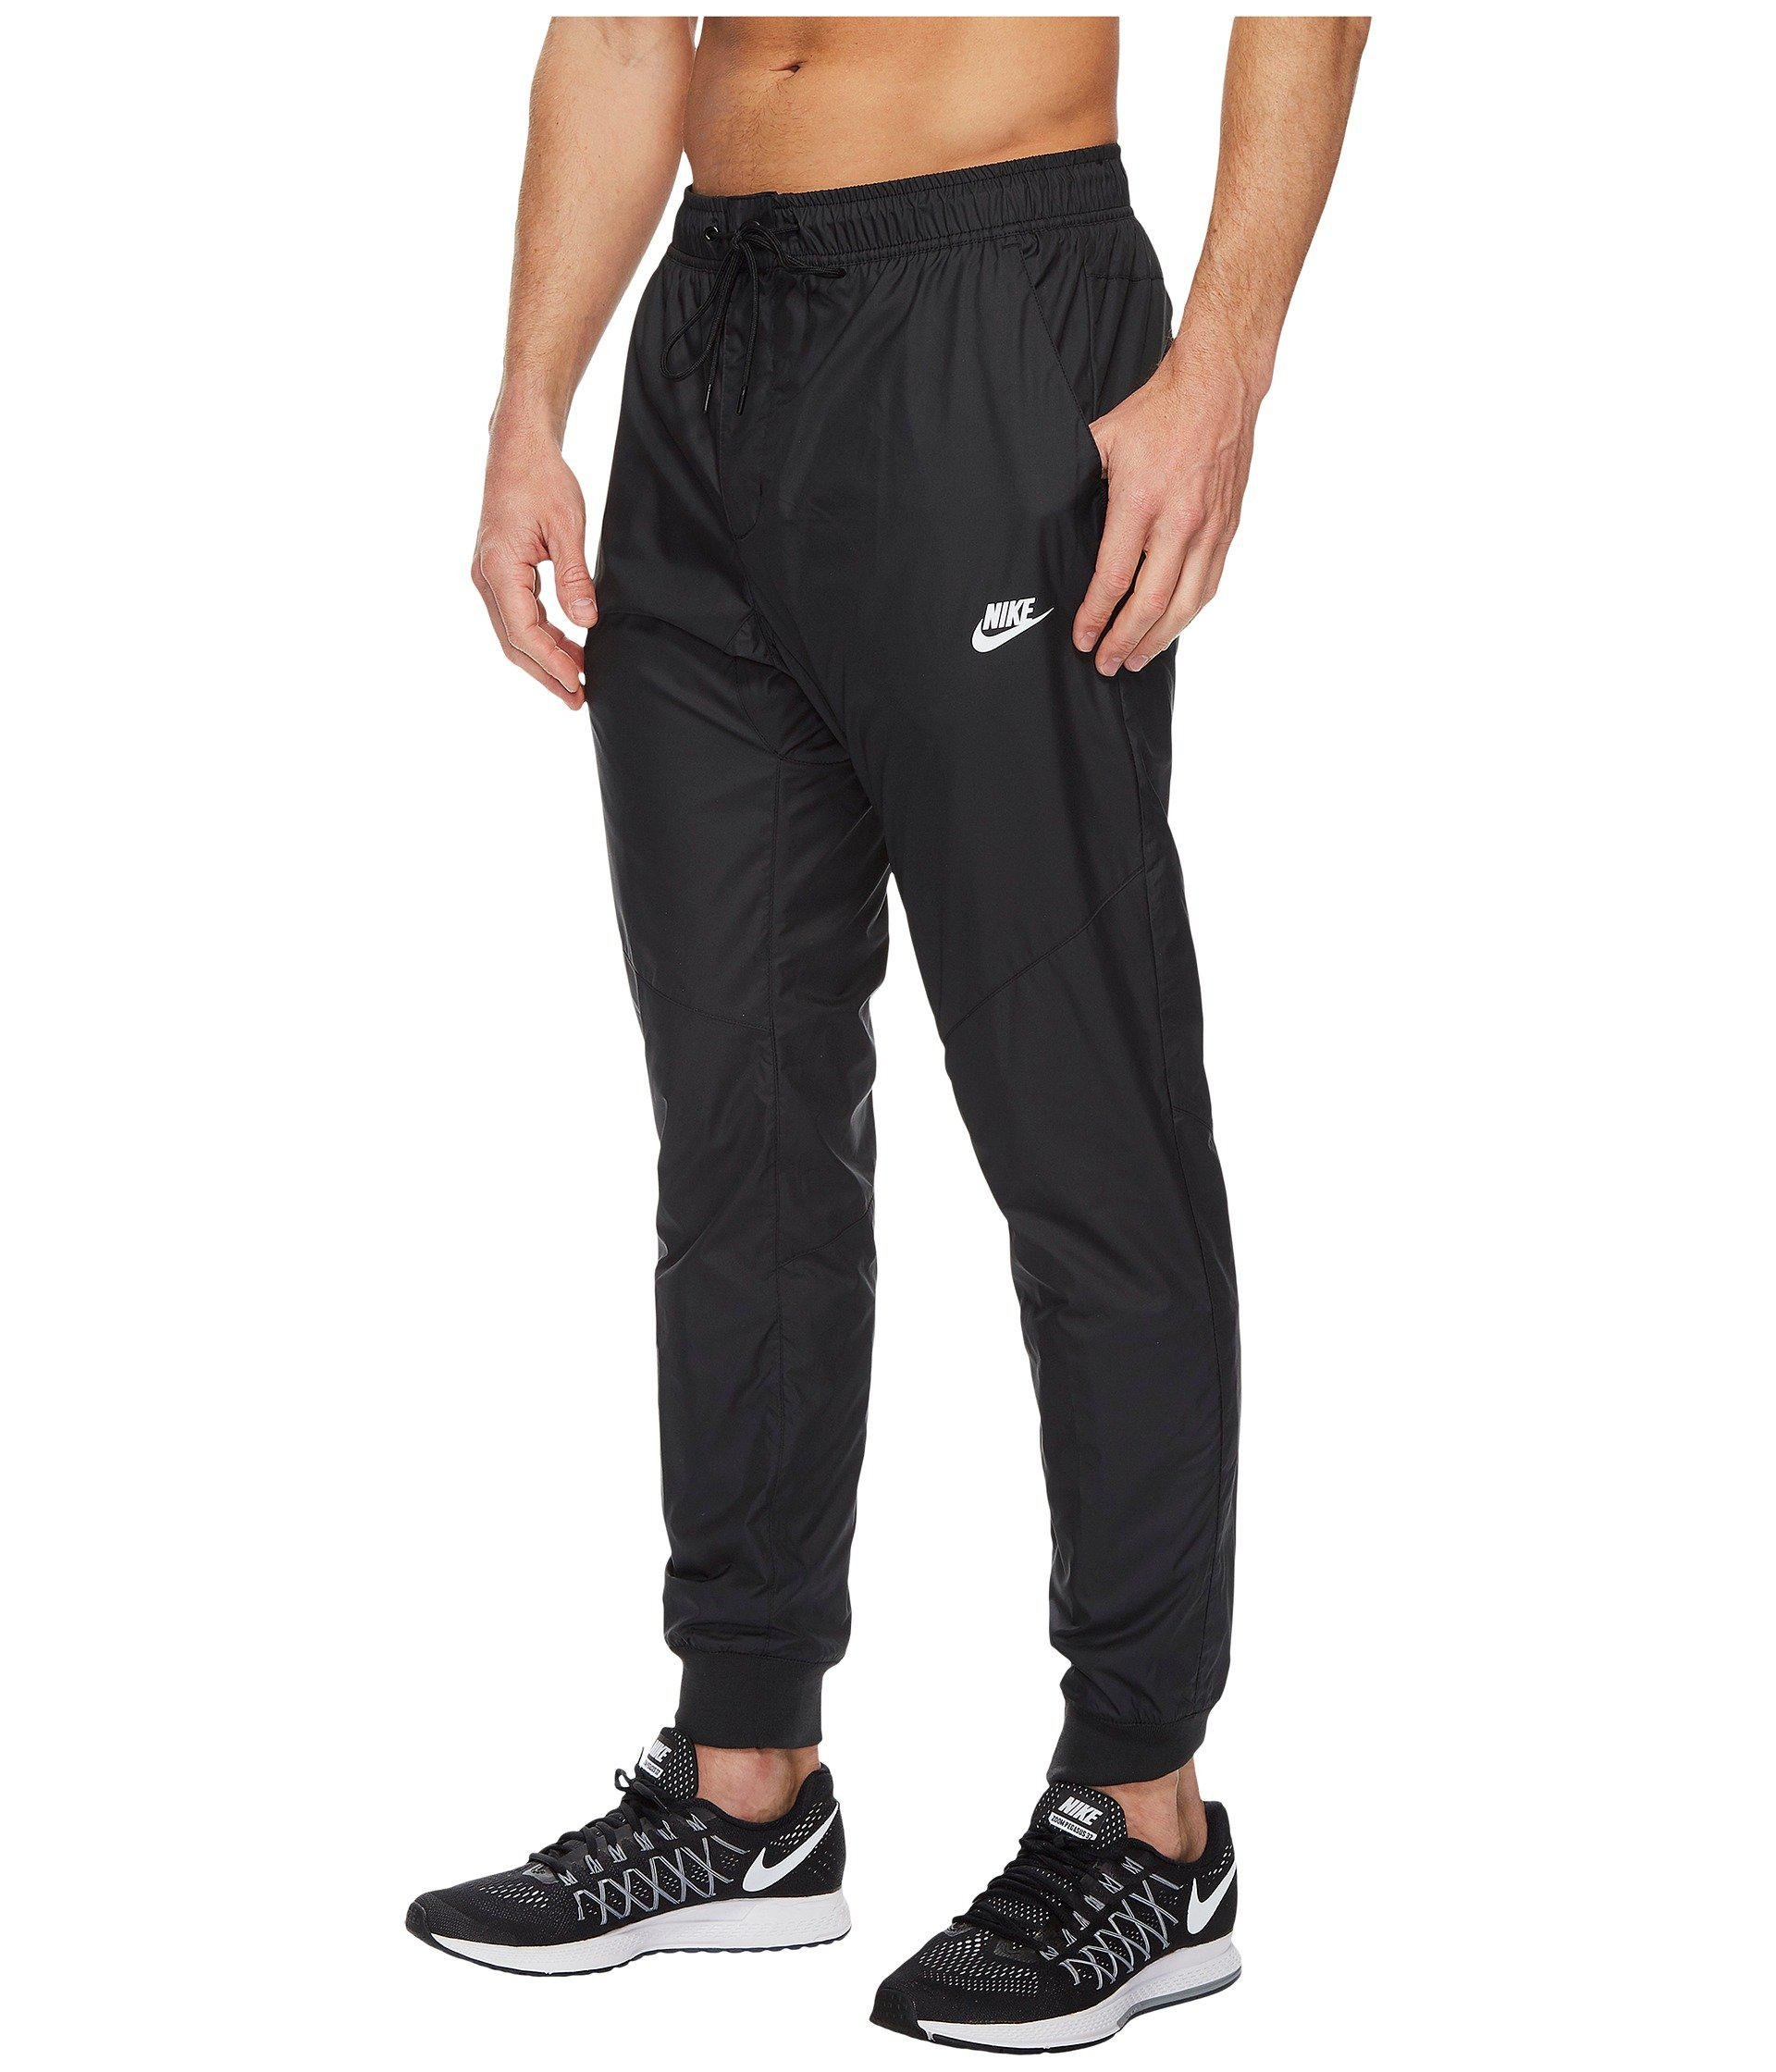 Nike Synthetic Sportswear Windrunner Pant in Black/Black/Black/White  (Black) for Men | Lyst